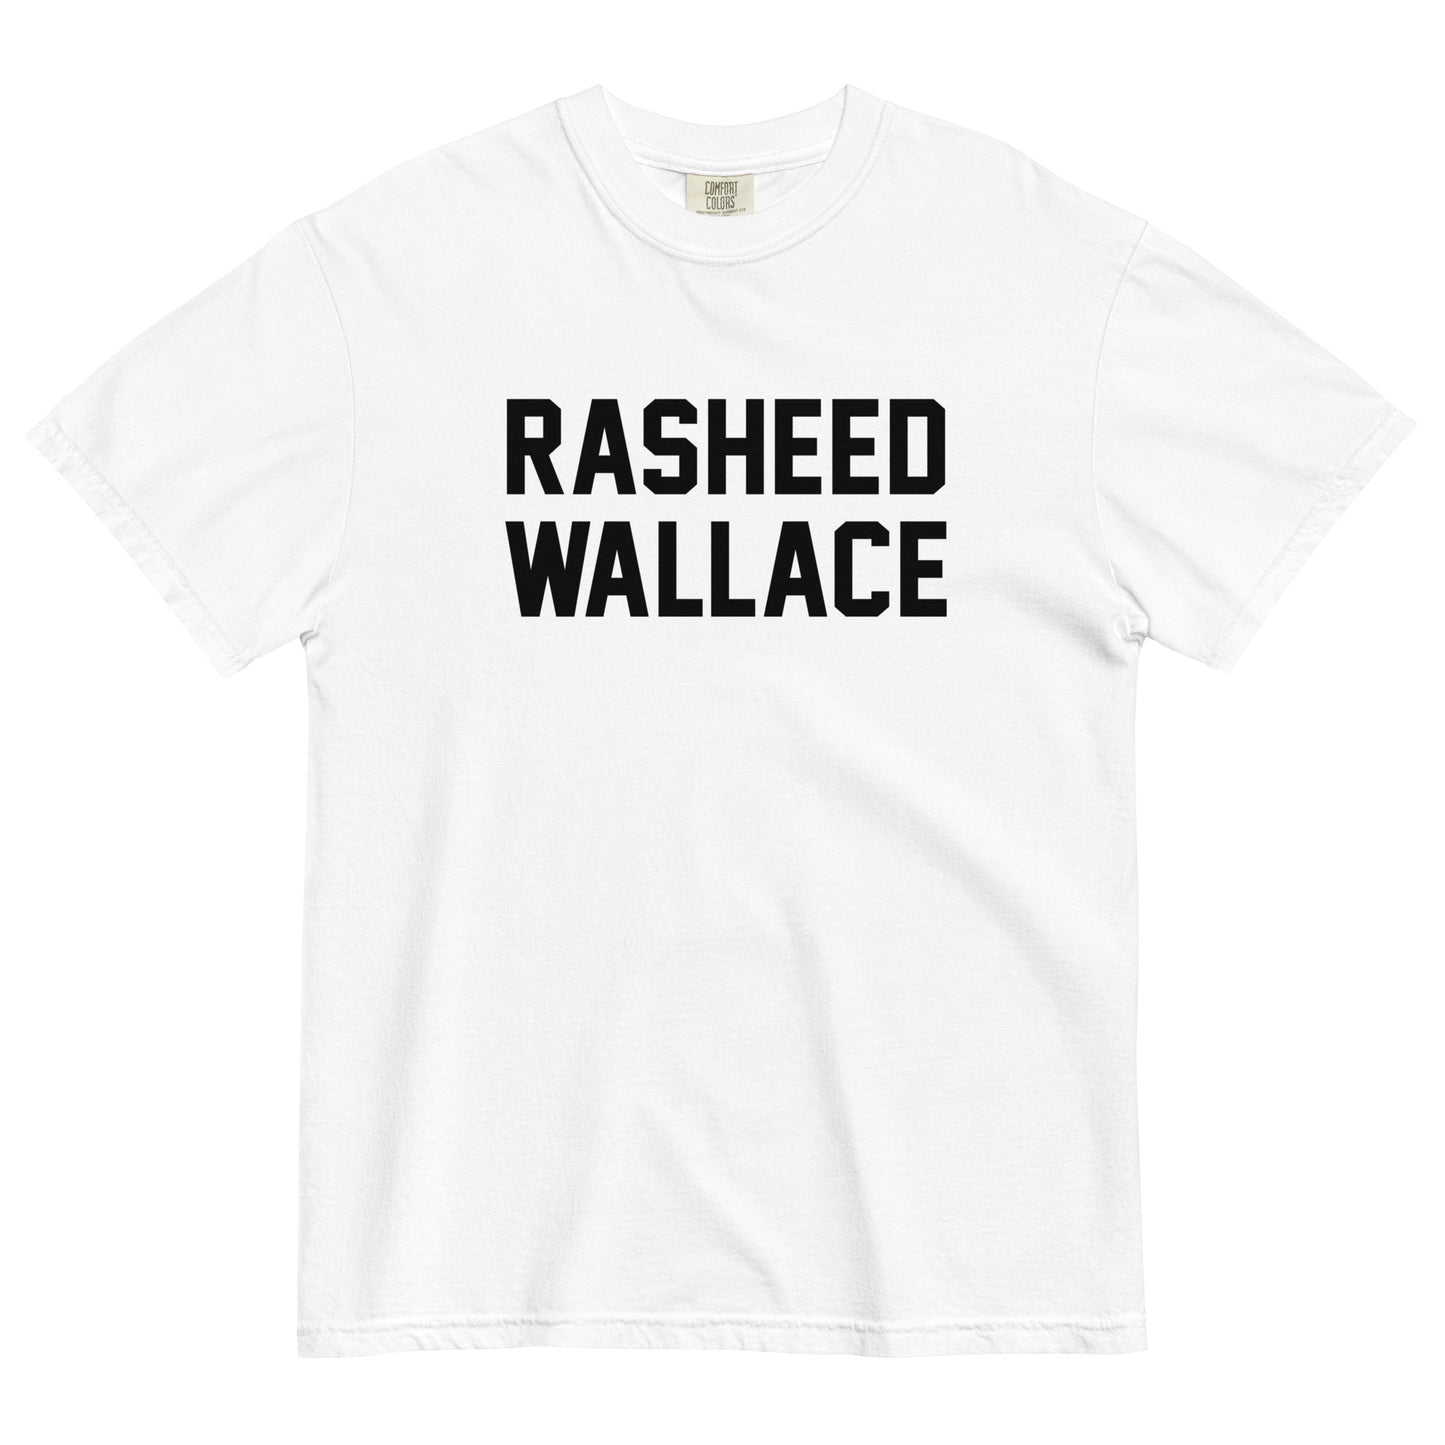 RASHEED WALLACE